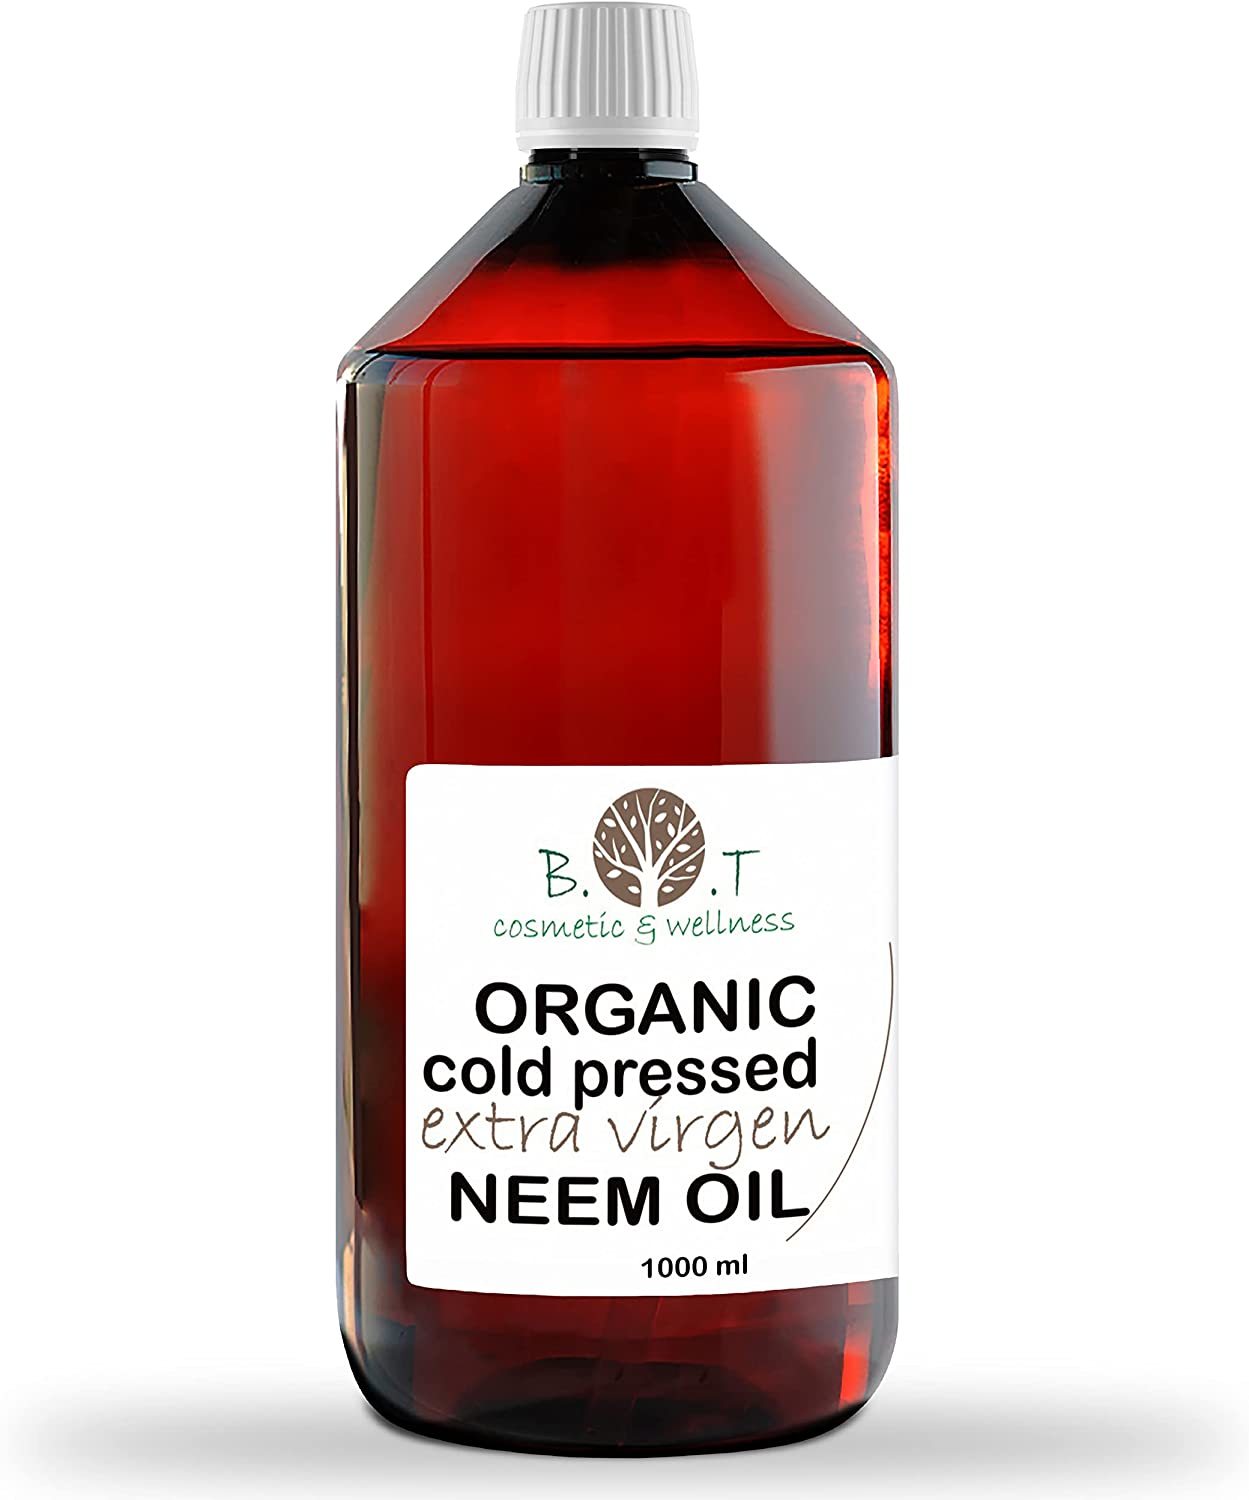 Como usar el Jabón potásico y aceite de neem